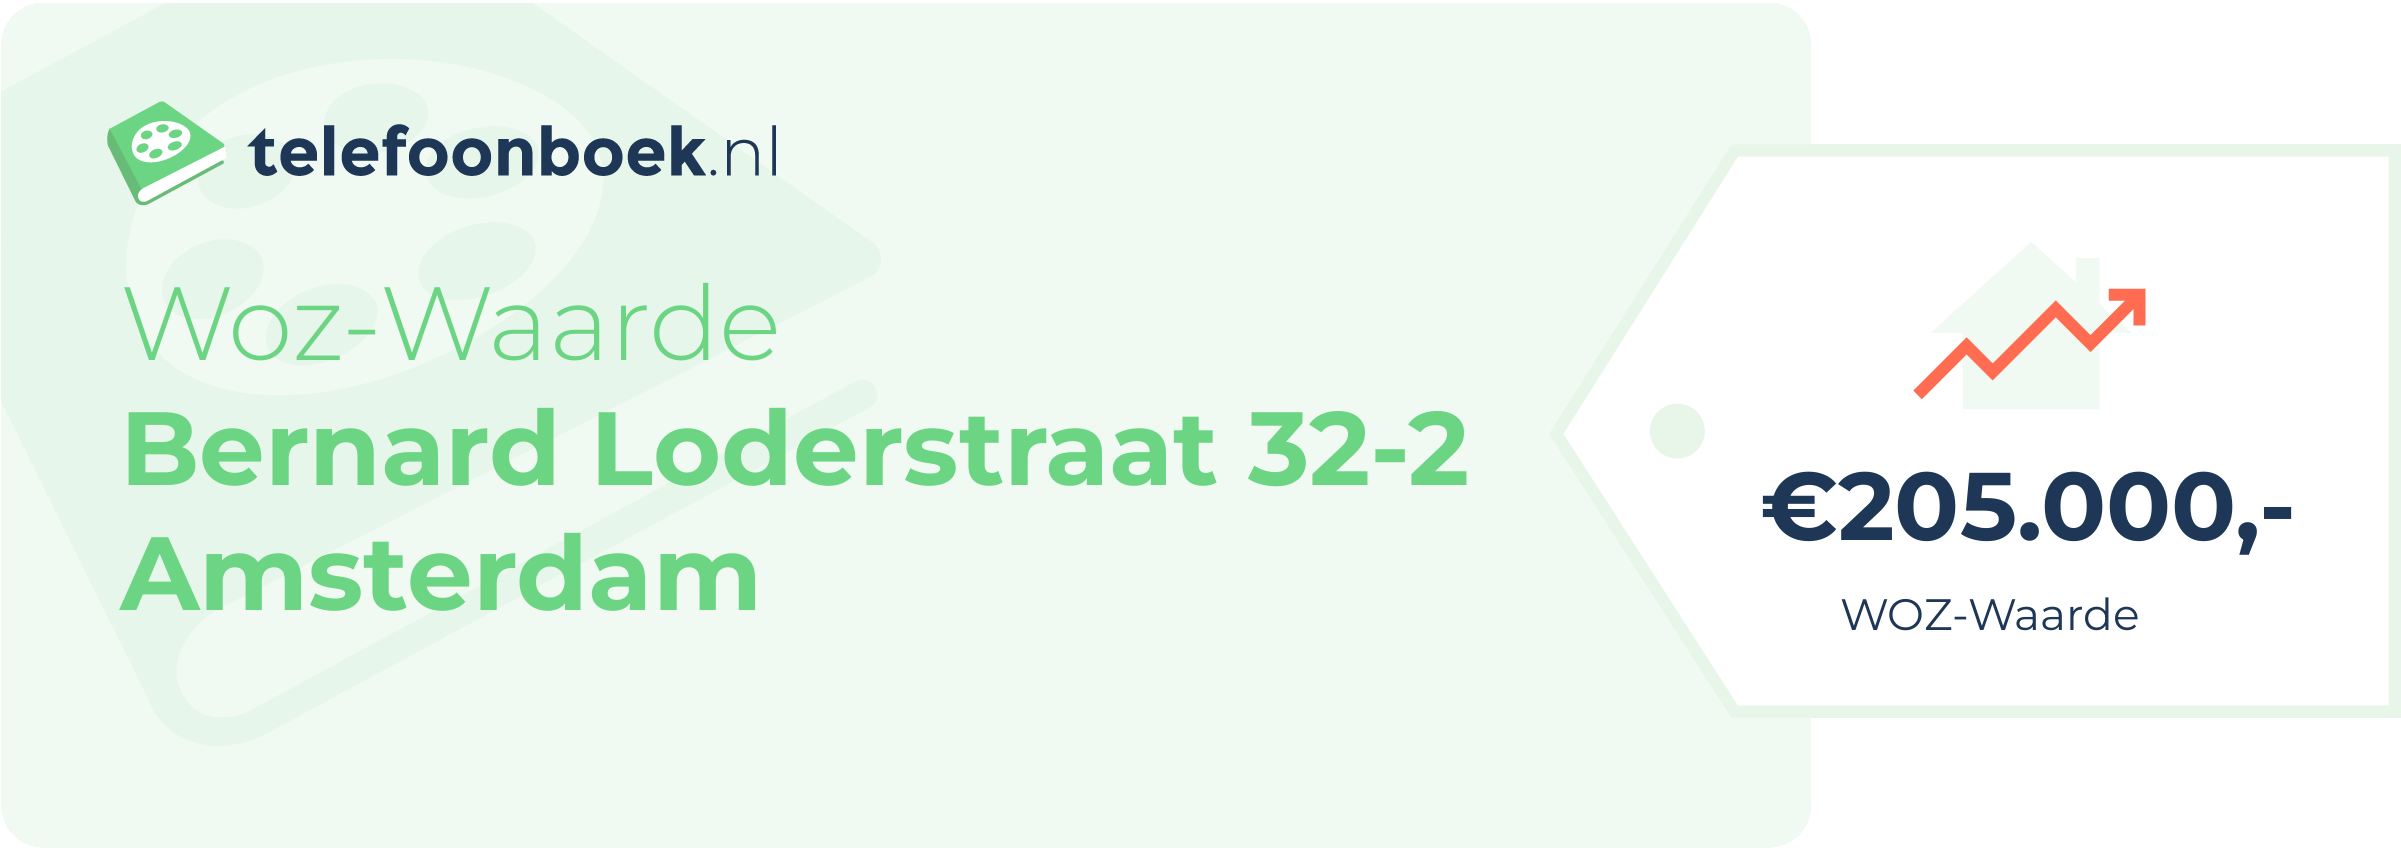 WOZ-waarde Bernard Loderstraat 32-2 Amsterdam